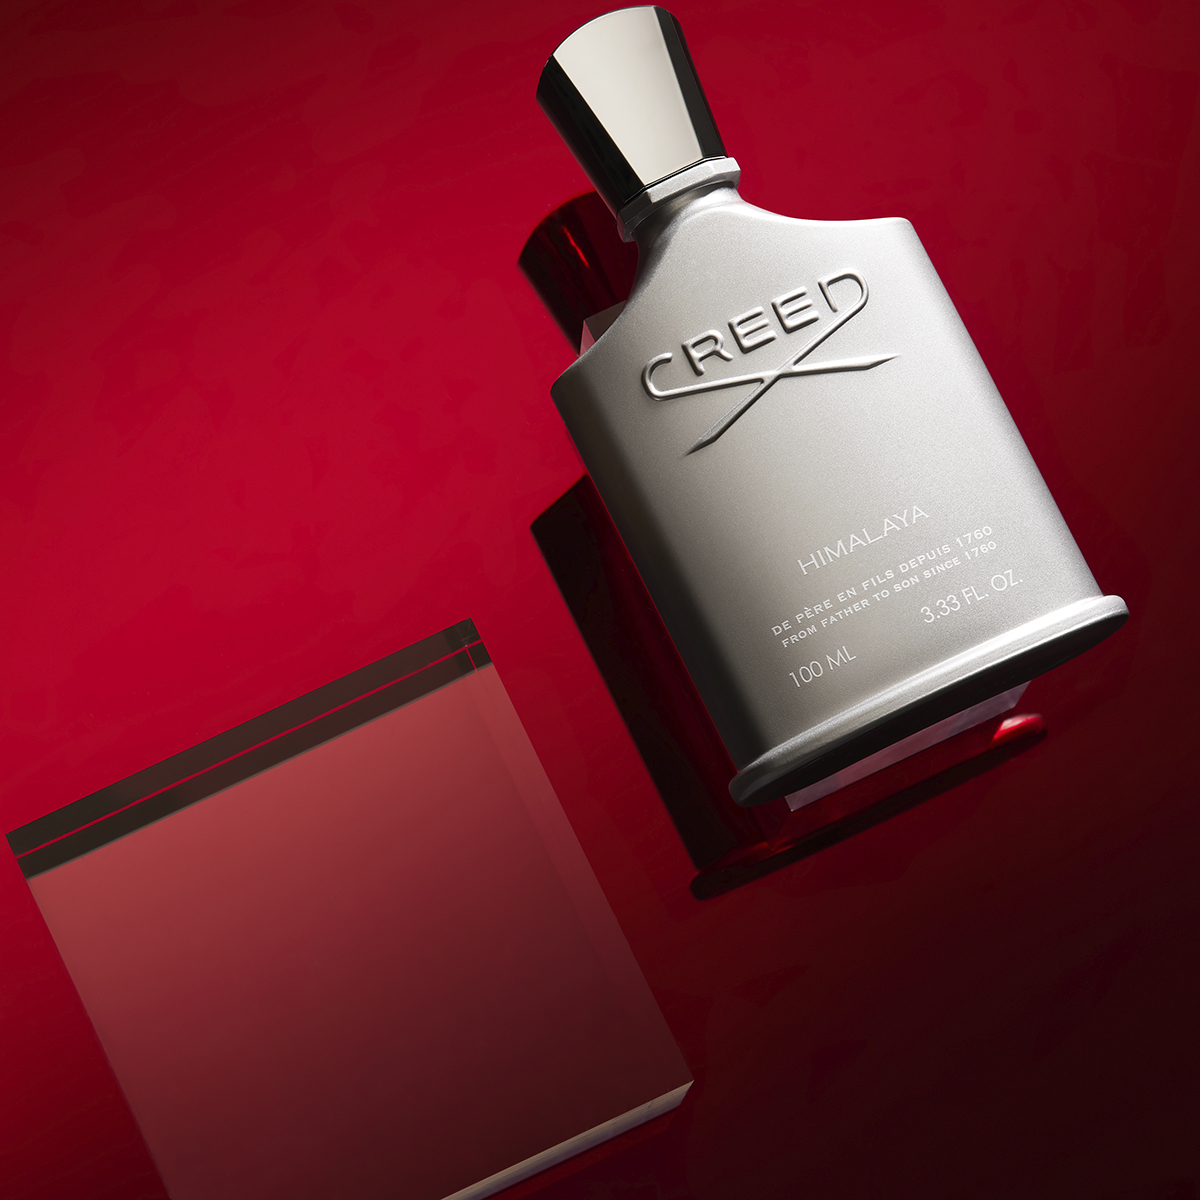 Creed - Himalaya Eau de Parfum